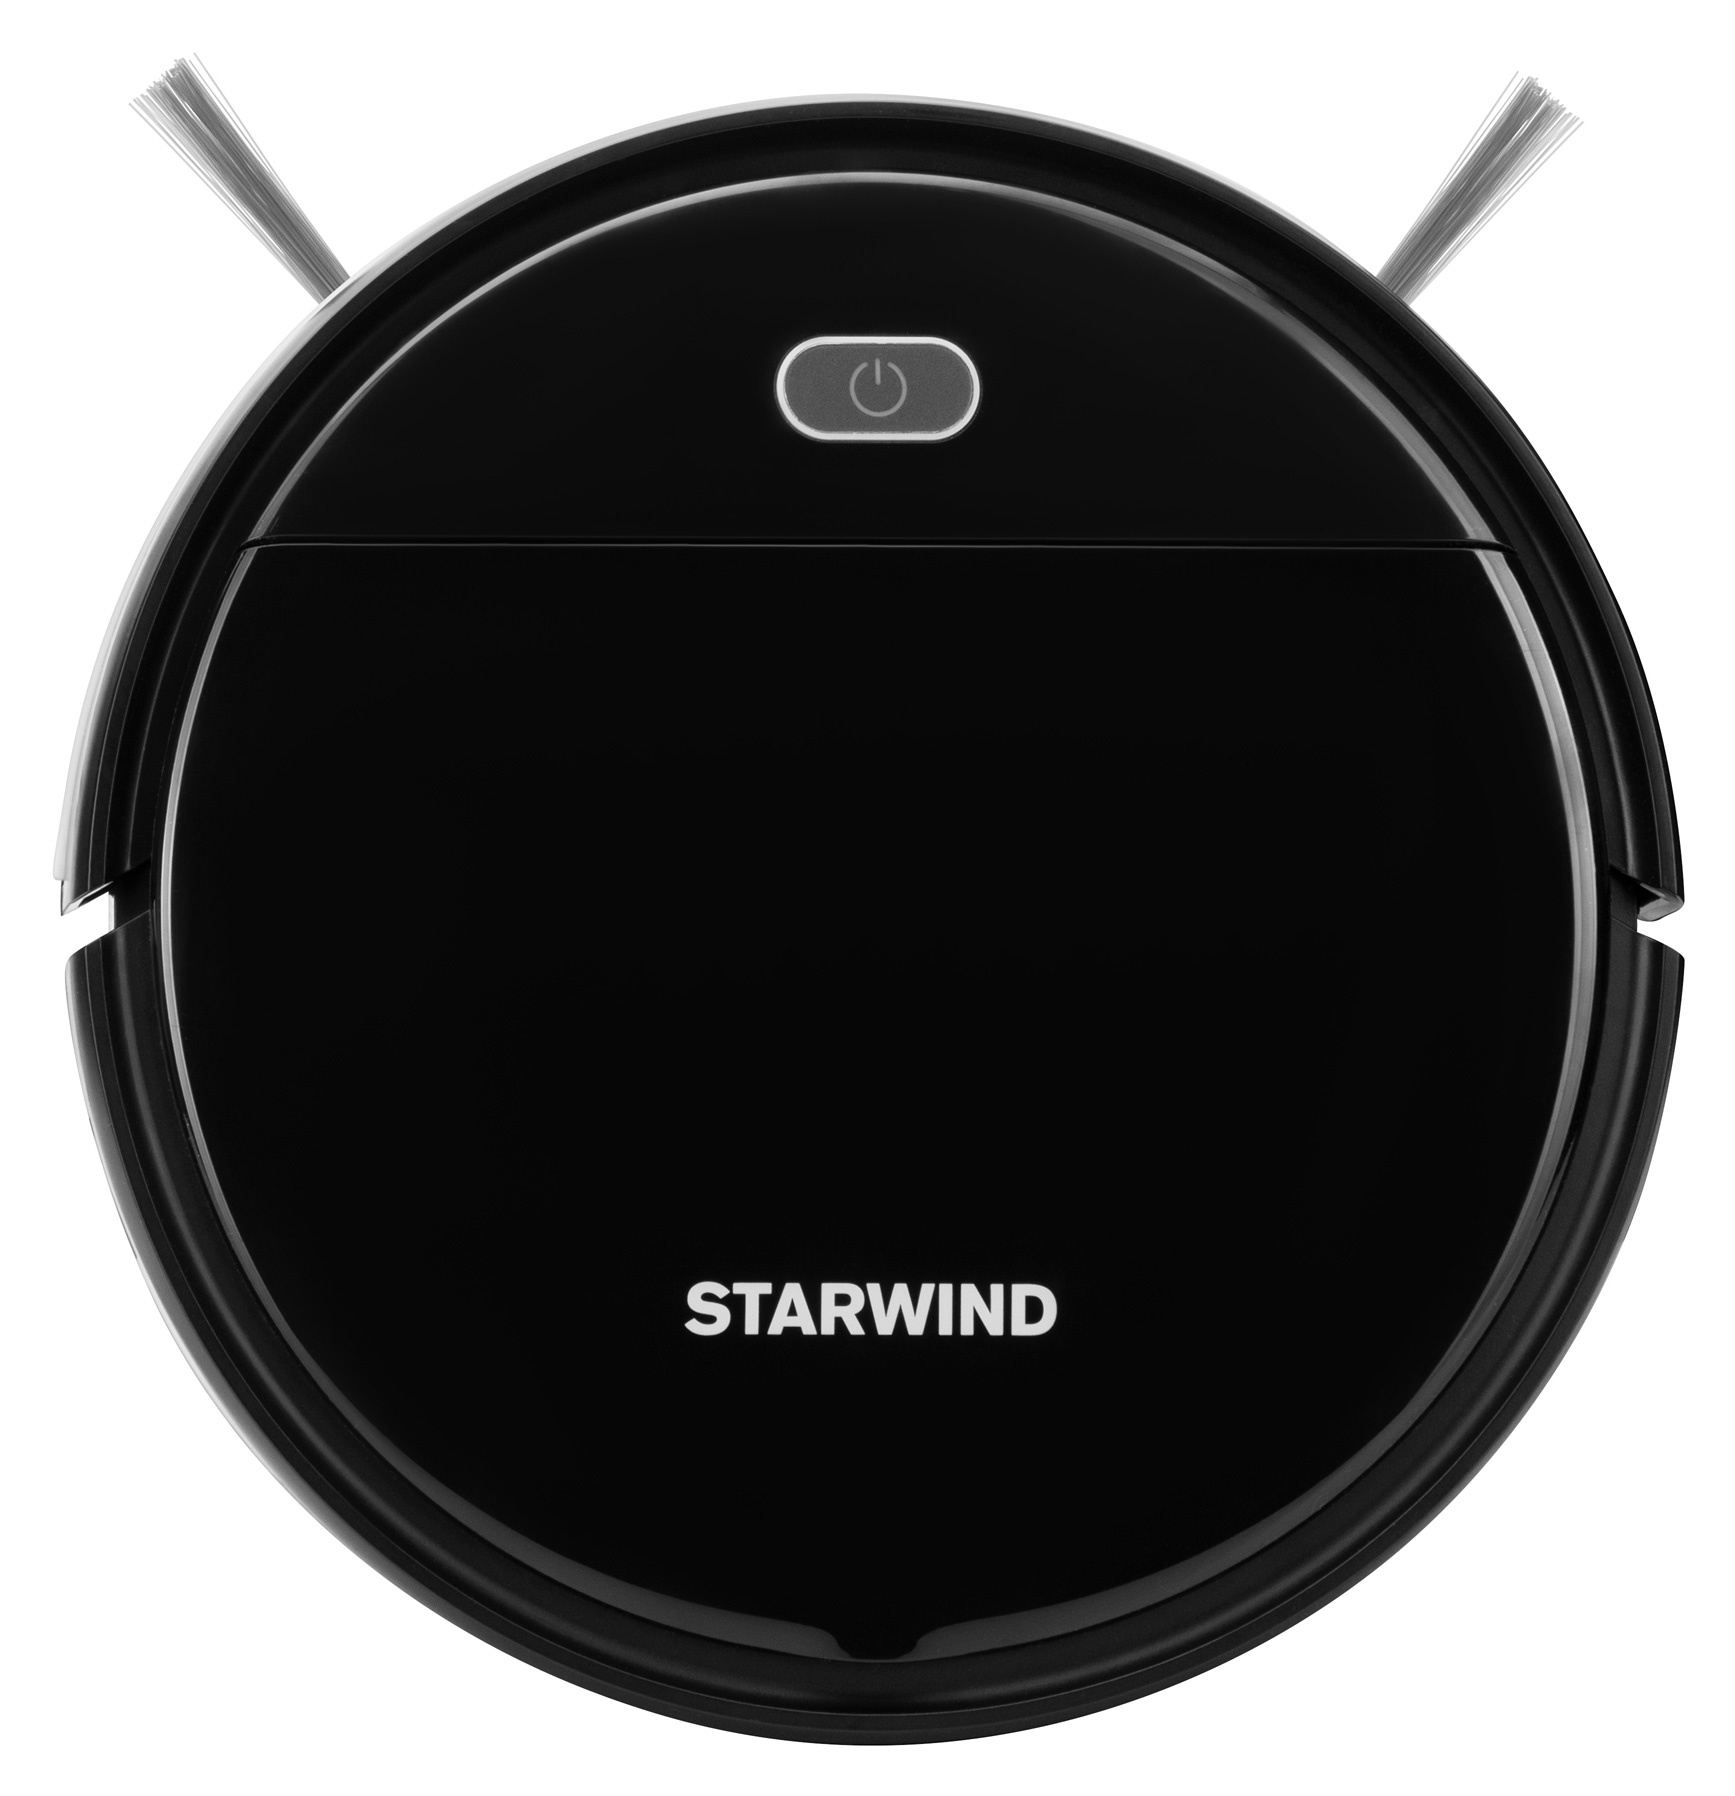 Робот-пылесос Starwind SRV3950 черный от магазина Старвинд